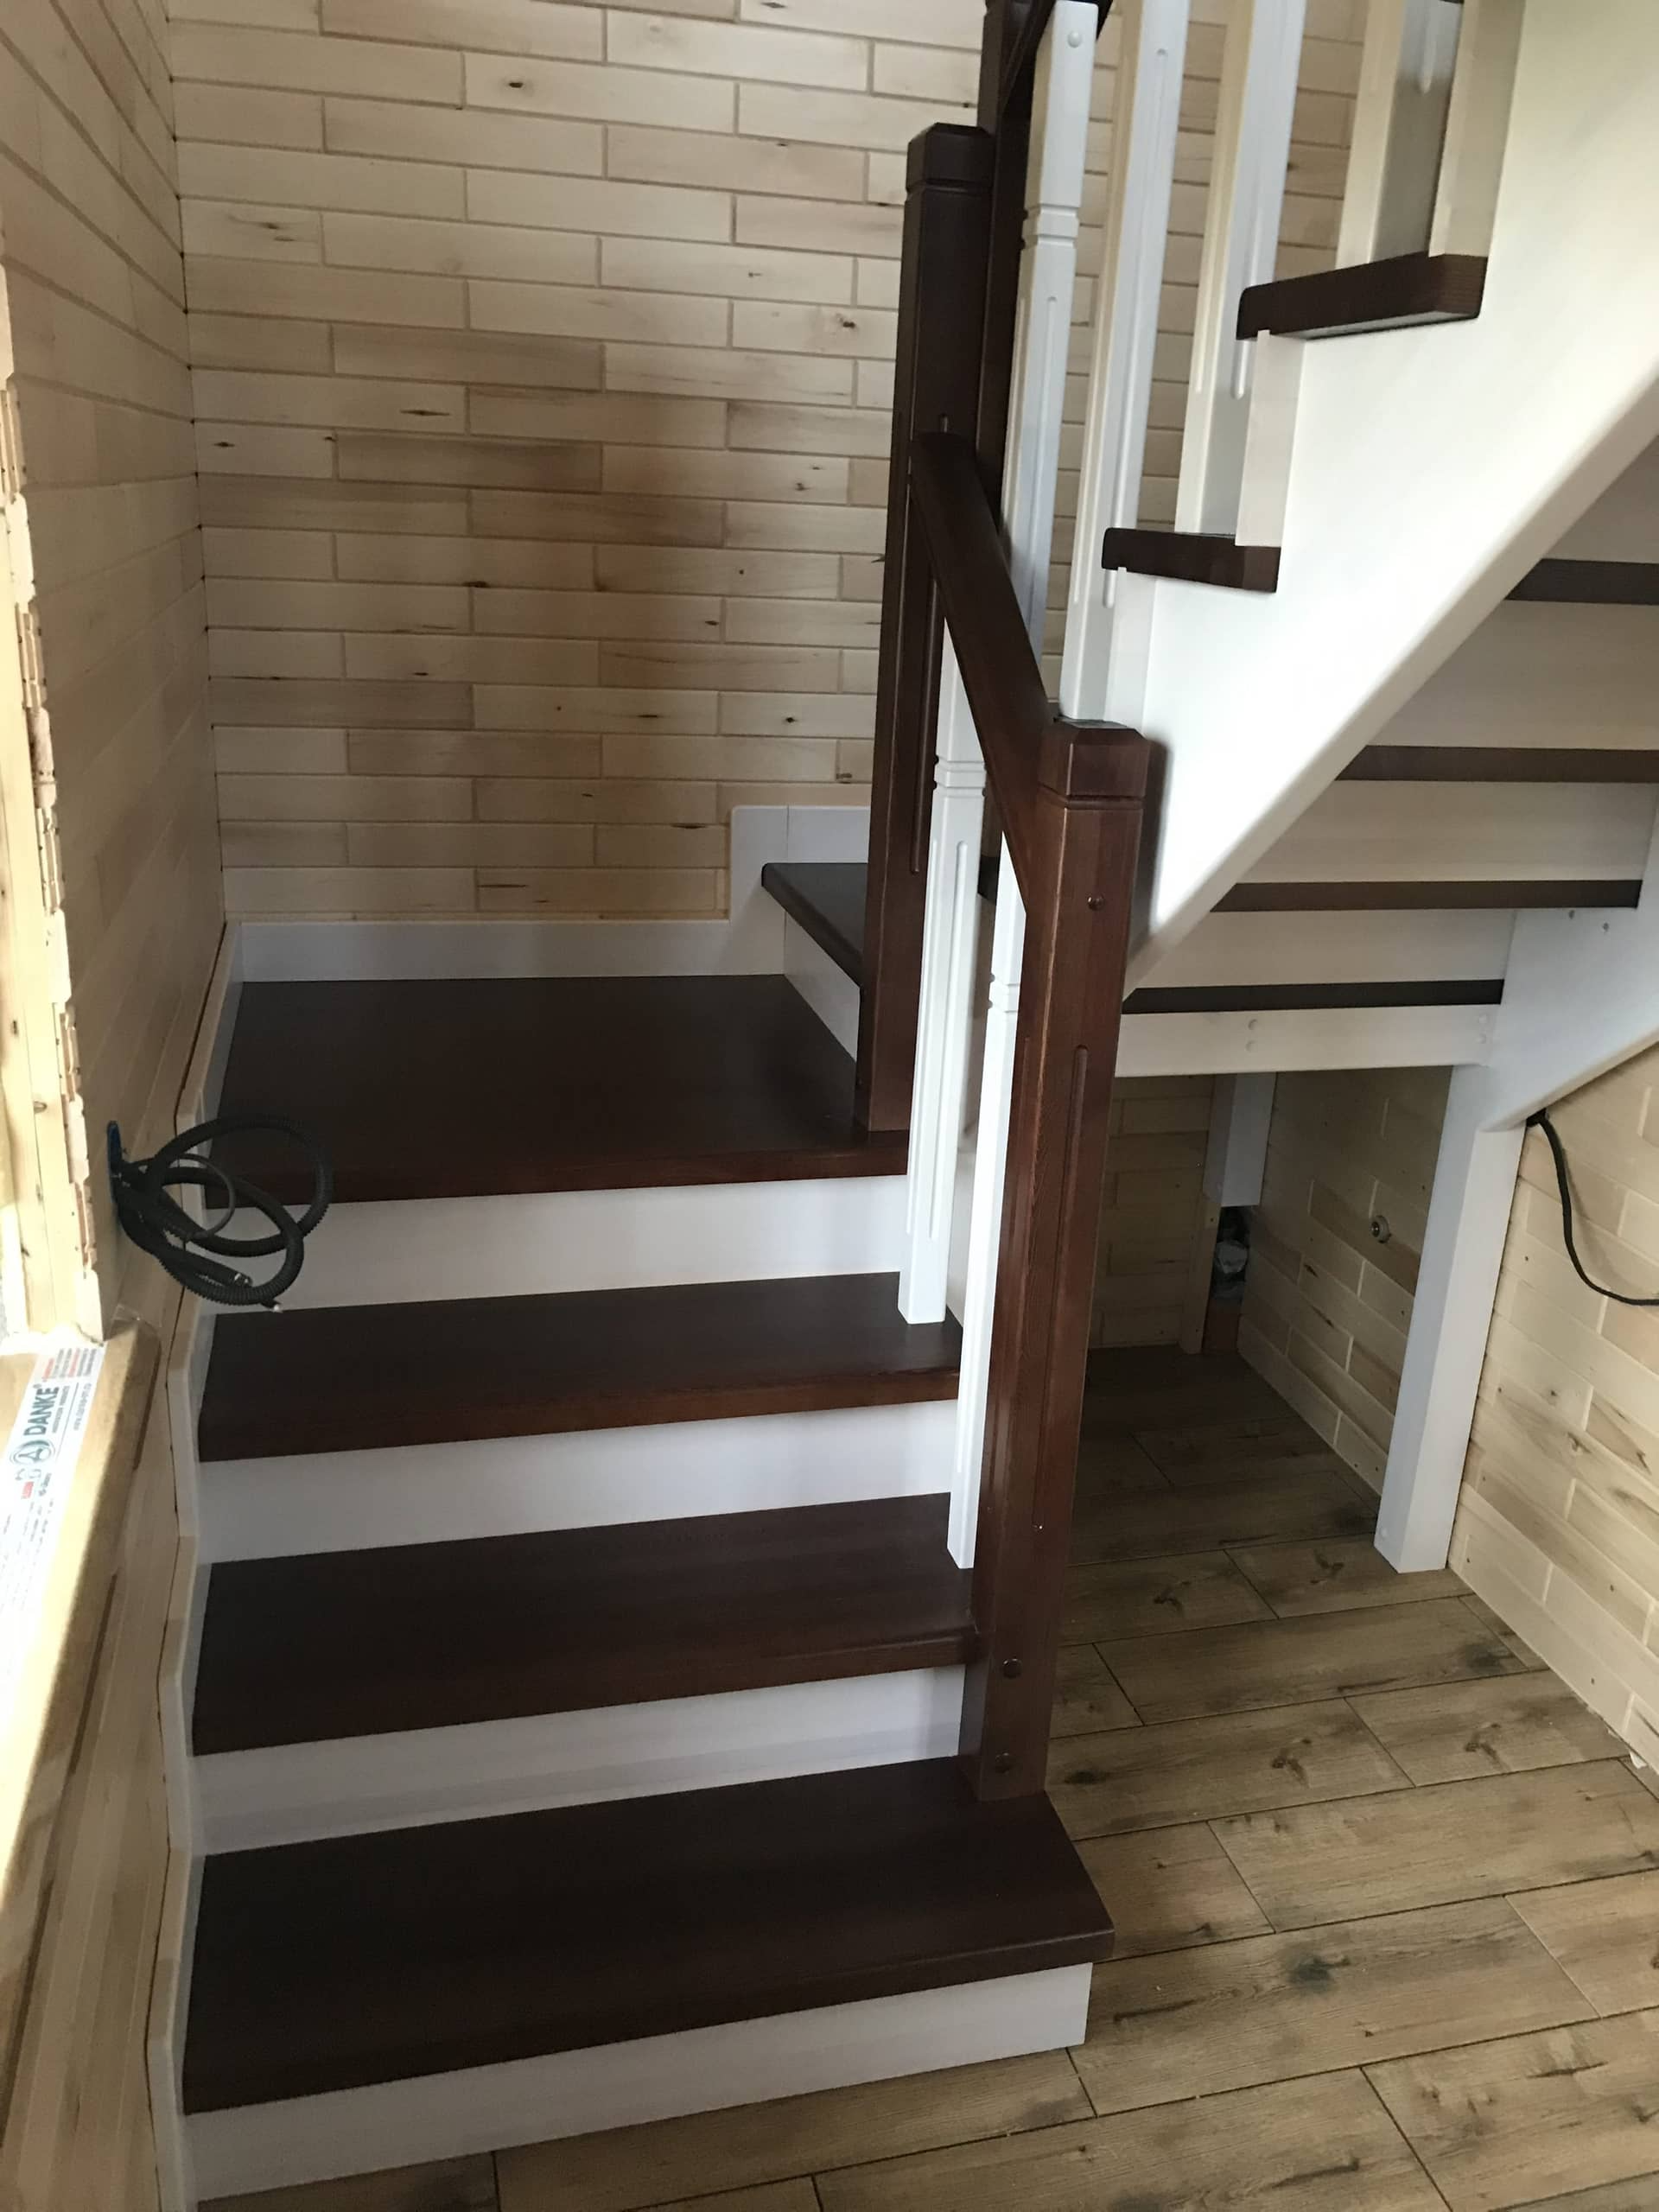 Фото П - образной деревянная лестница с 2-мя площадками на 180 градусов.